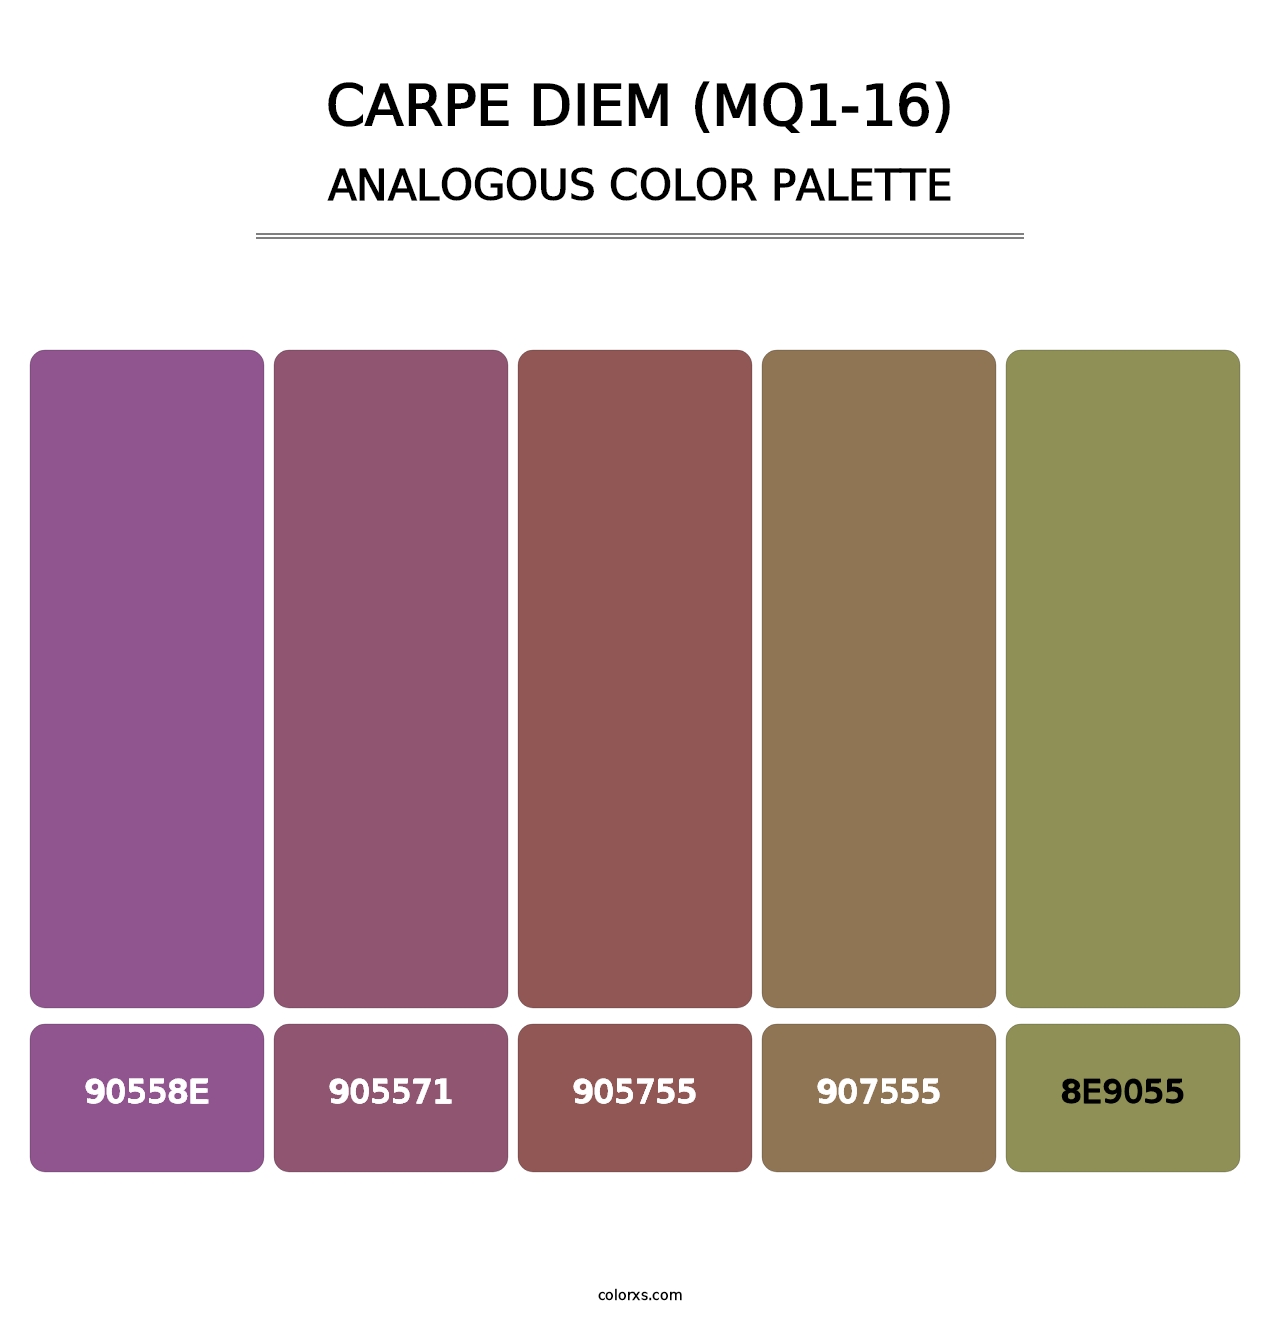 Carpe Diem (MQ1-16) - Analogous Color Palette